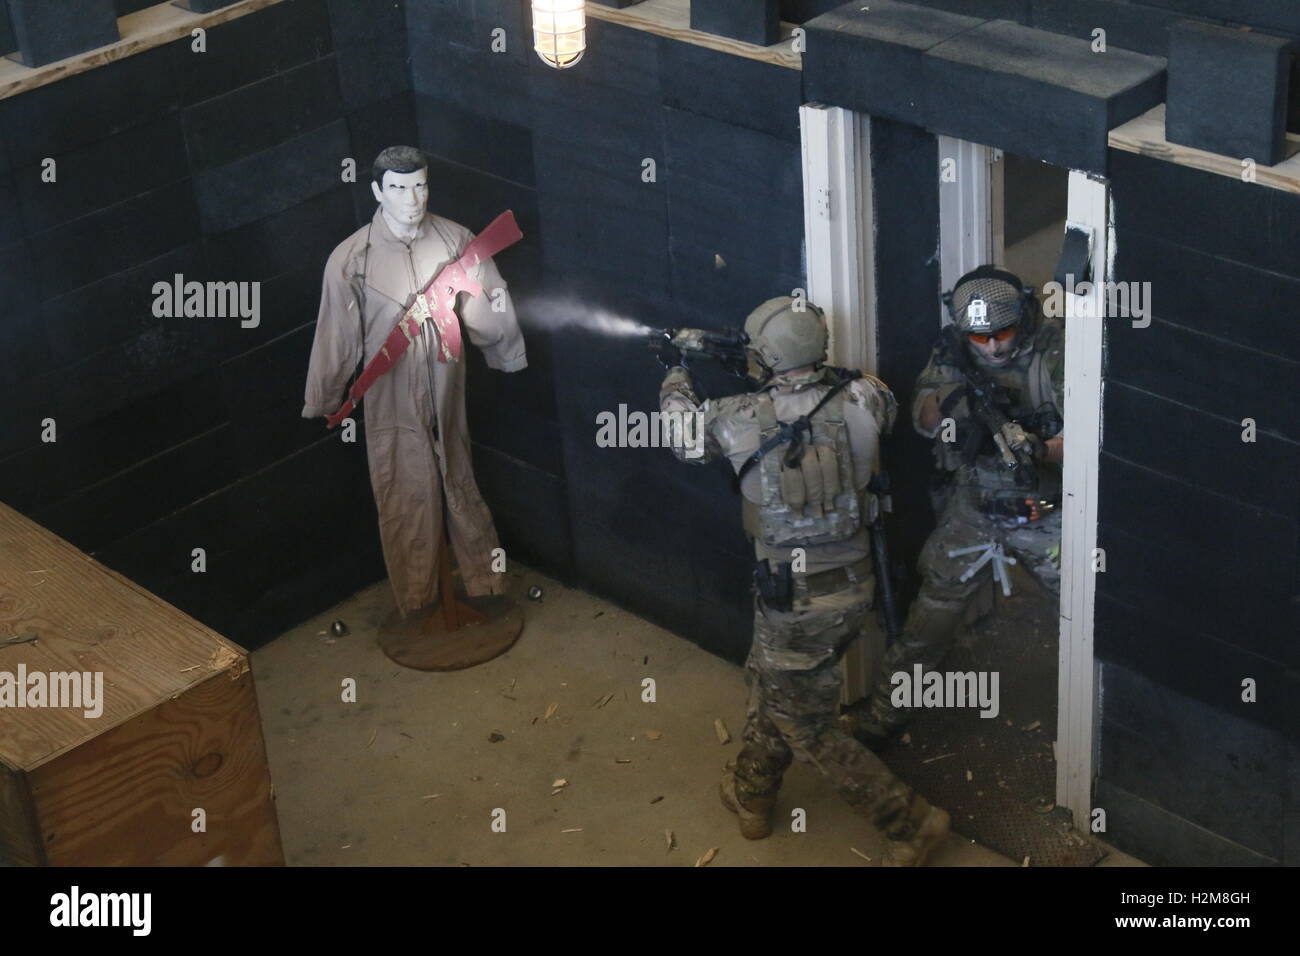 US-Spezialeinheiten Kommandos schießen auf ein Ziel dummy während einer live-Feuer-Ausbildung auf die gemeinsame zivile Ausrichtung Konferenz Funktion Ausübung 17. August 2016 in Fort Bragg, North Carolina. Stockfoto